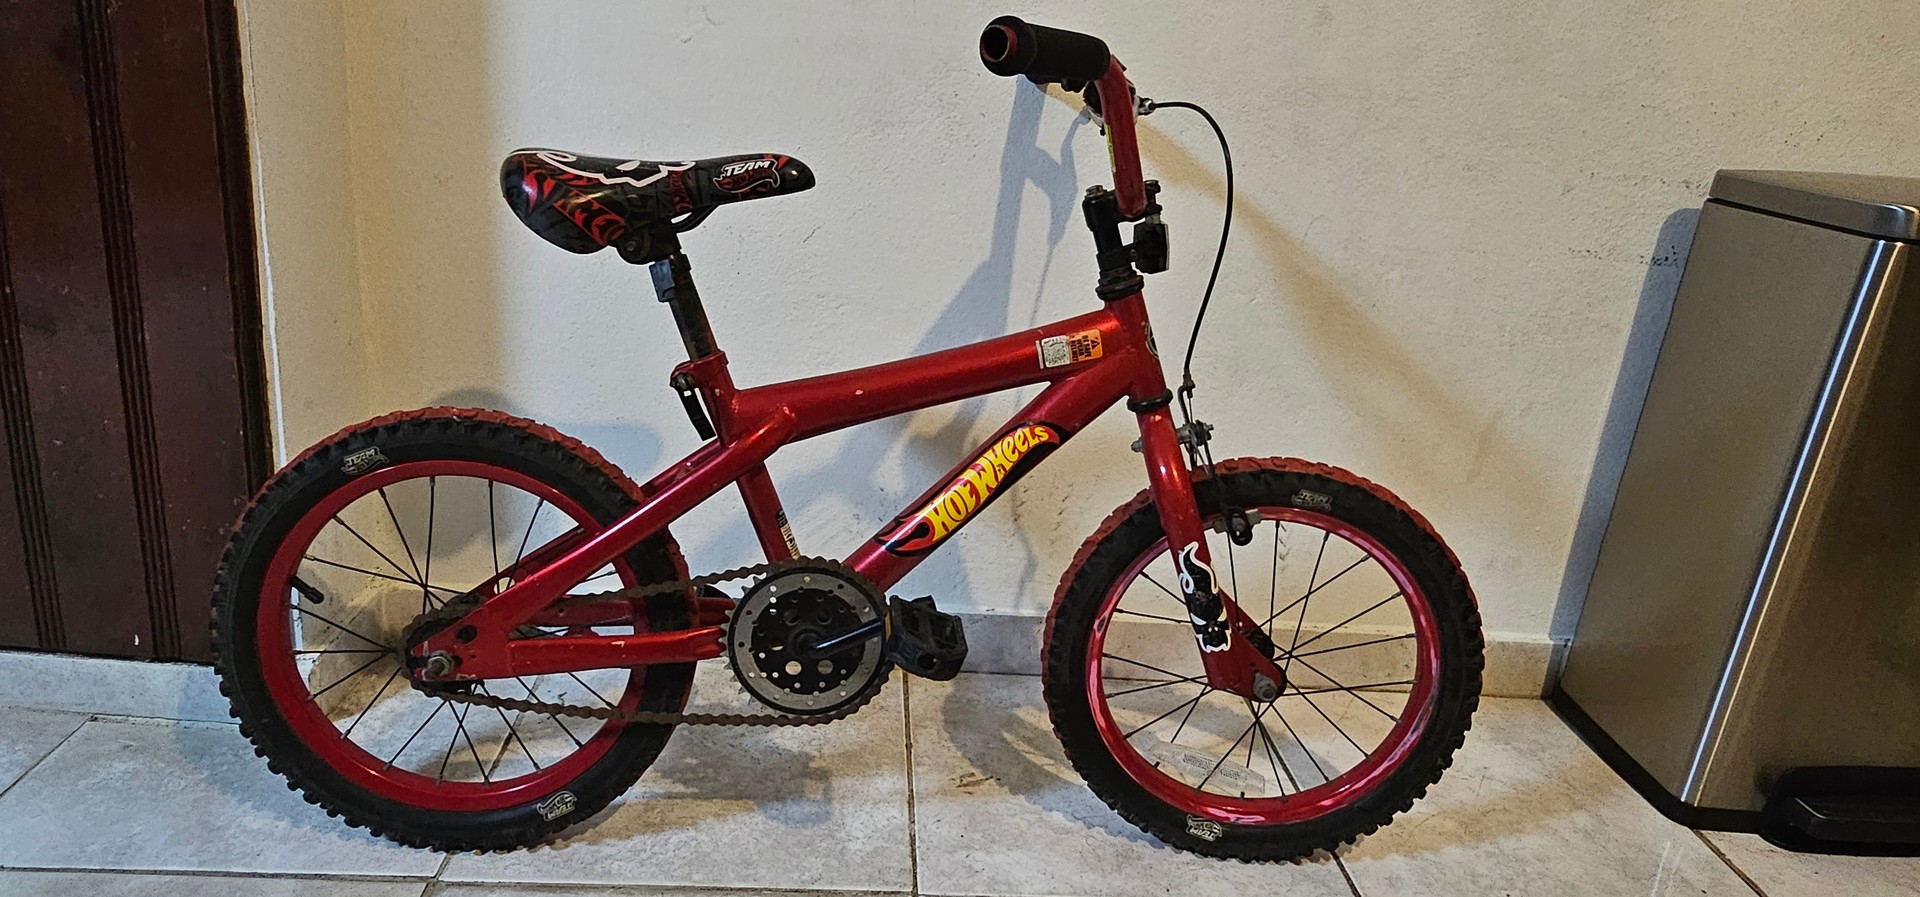 bicicletas y accesorios - Bicicleta Hot Wheels  Aro 12 0